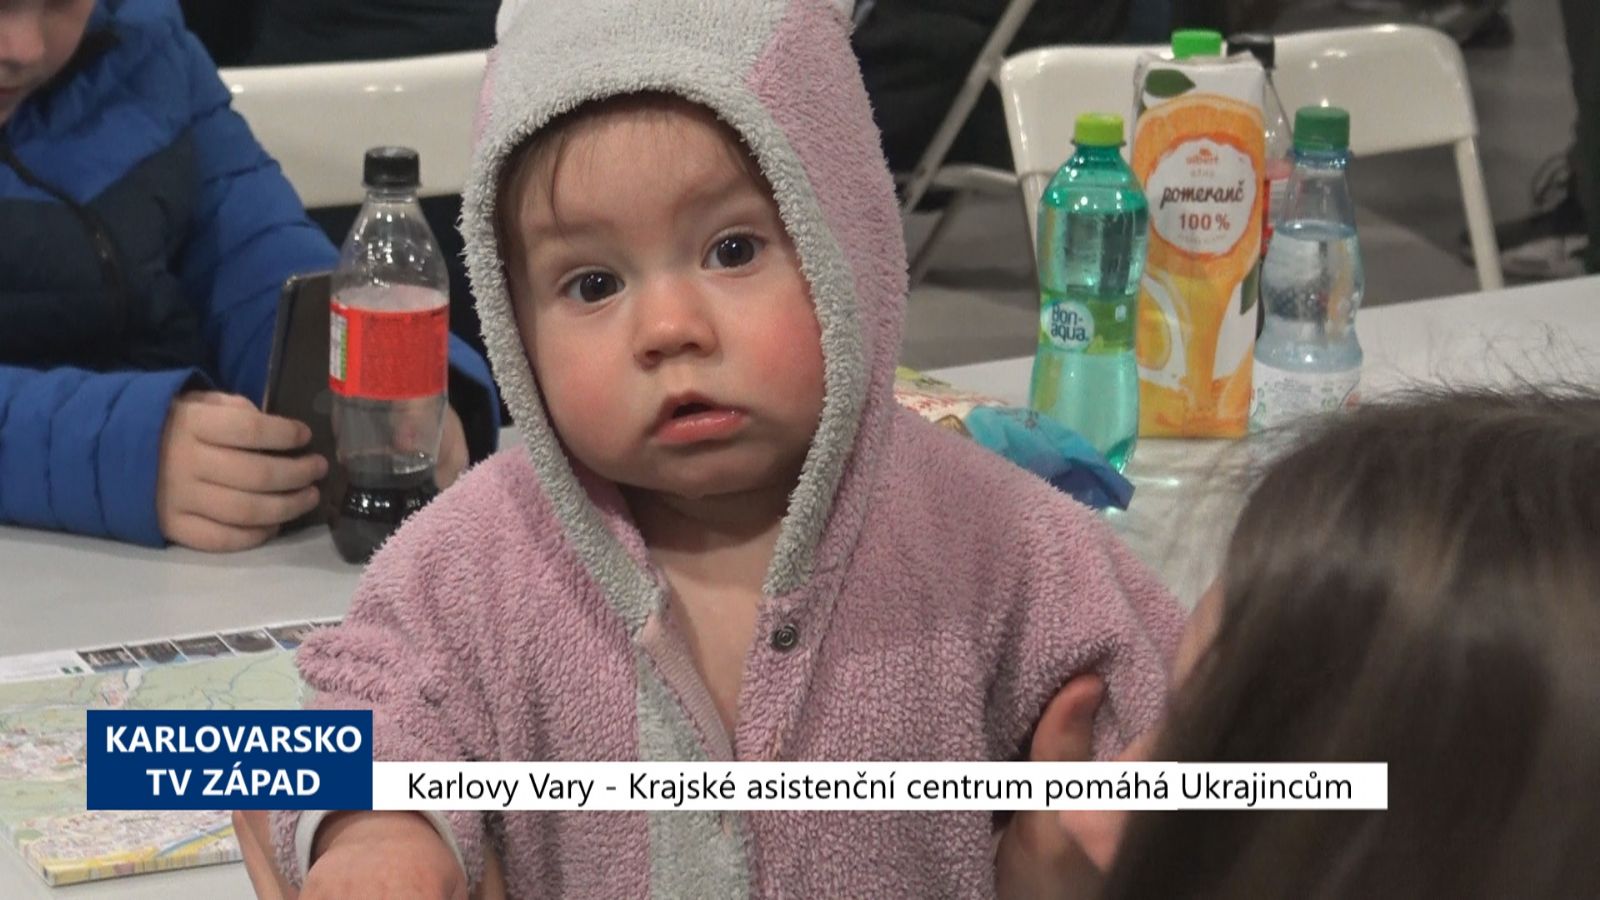 Karlovy Vary: Krajské asistenční centrum pomáhá Ukrajincům (TV Západ)